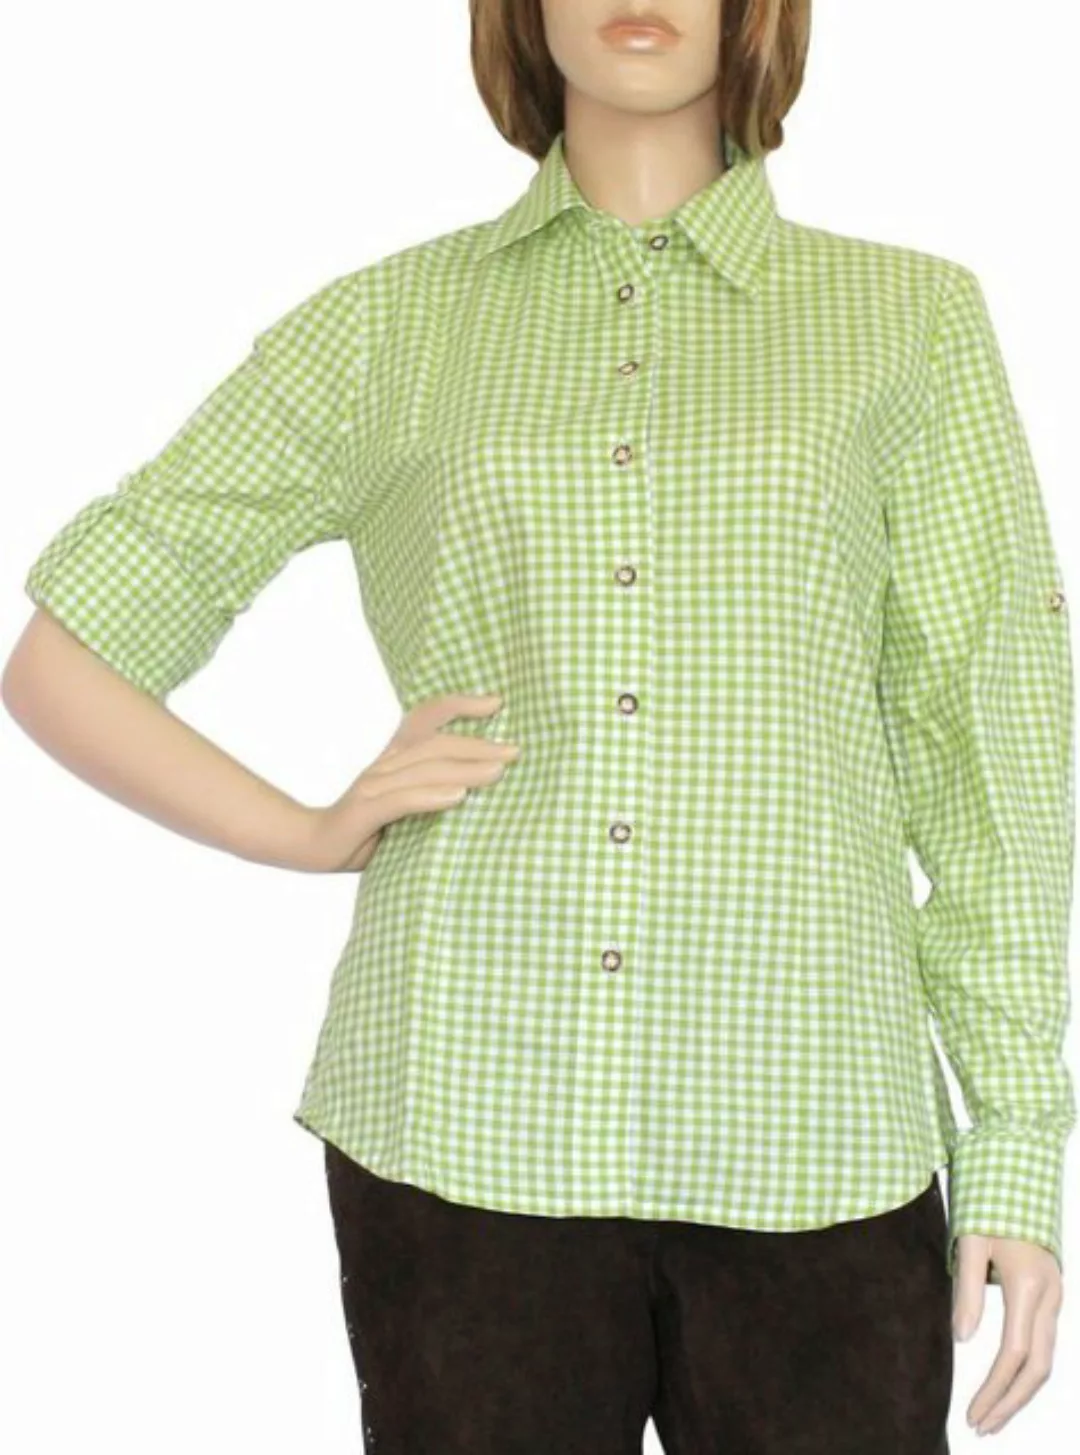 German Wear Trachtenbluse OB6-grün Trachtenbluse Trachtenlederhosen-bluse g günstig online kaufen